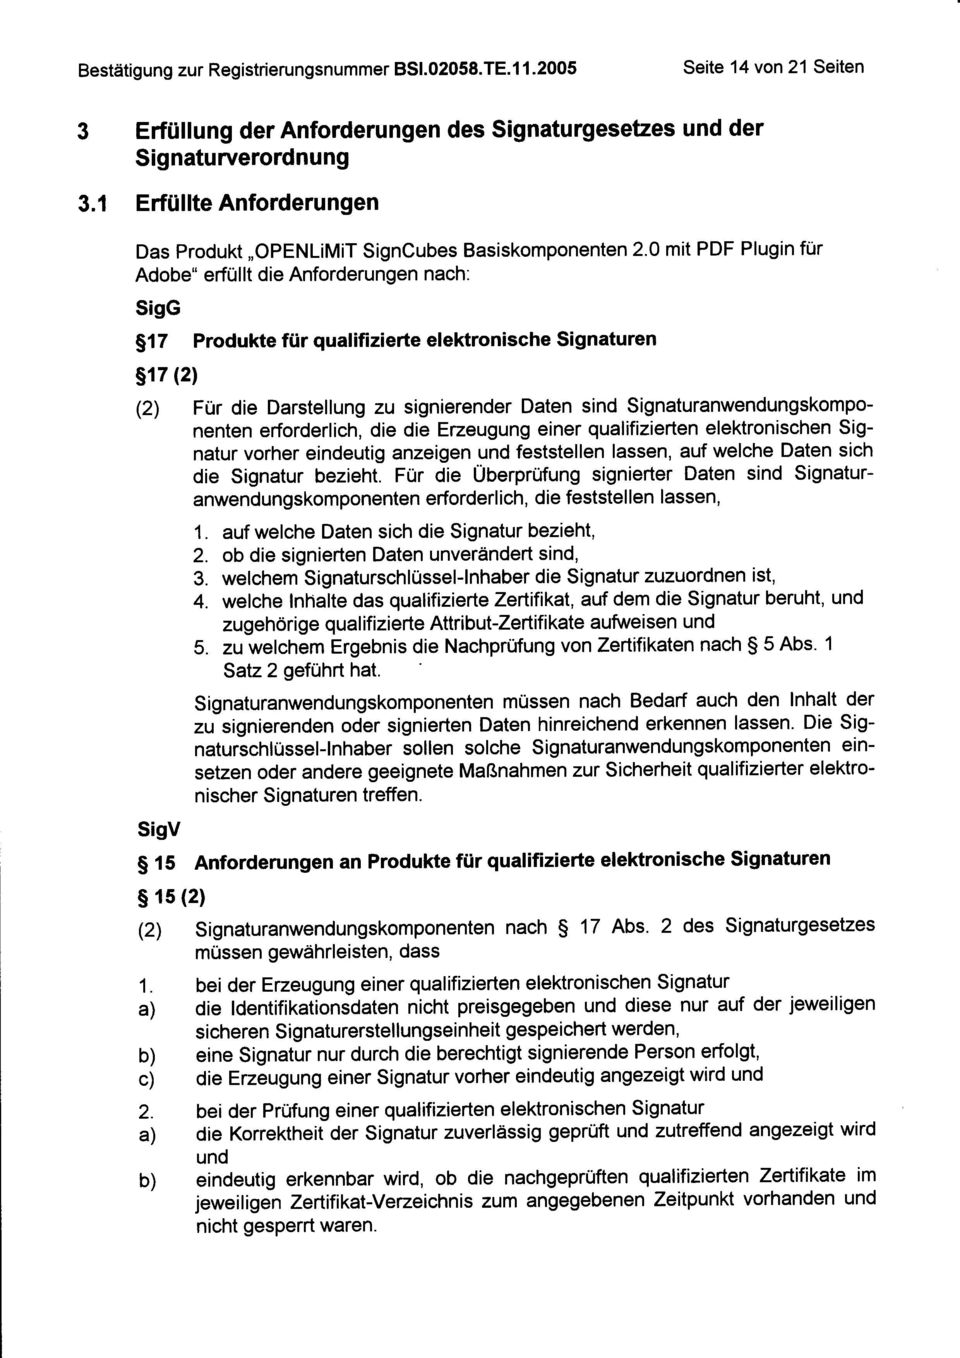 0 mit PDF Plugin für Adobe" erfüllt die Anforderungen nach: SigG 517 Produkte für qualifizierte elektronische Signaturen s17 (2) (2) Für die Darstellung zu signierender Daten sind